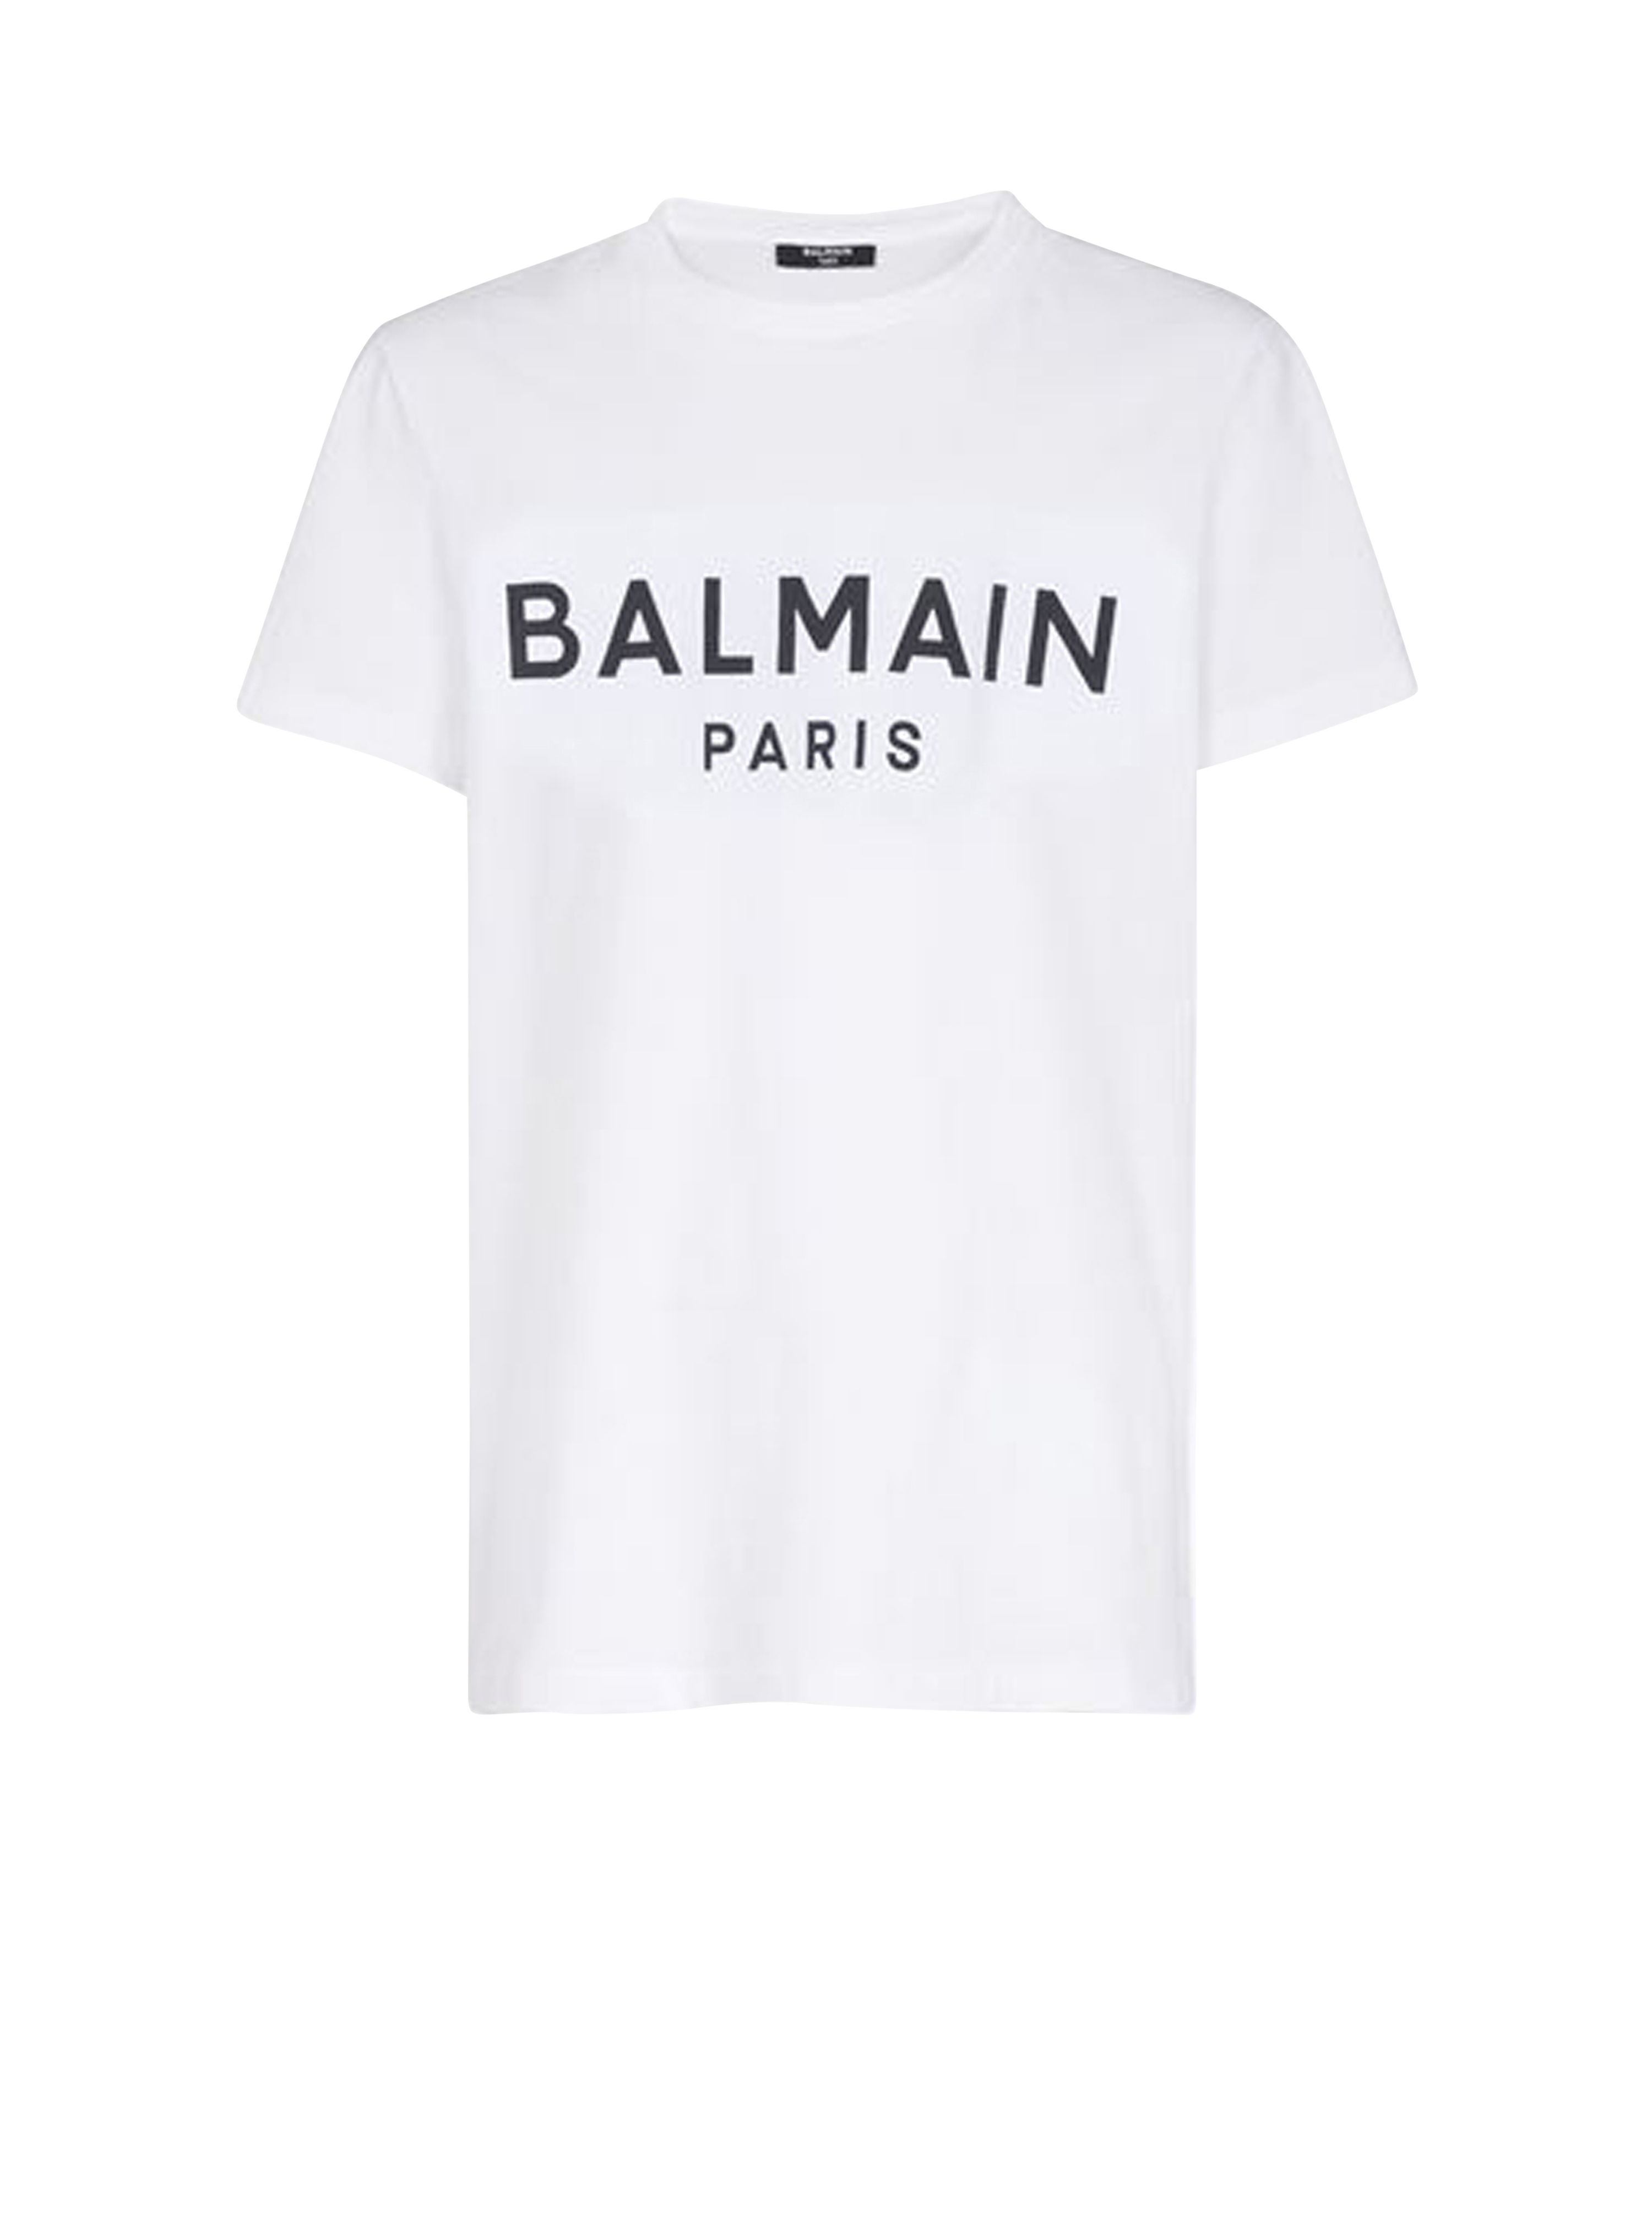 植绒 Balmain 徽标装饰环保设计棉质 T 恤, white